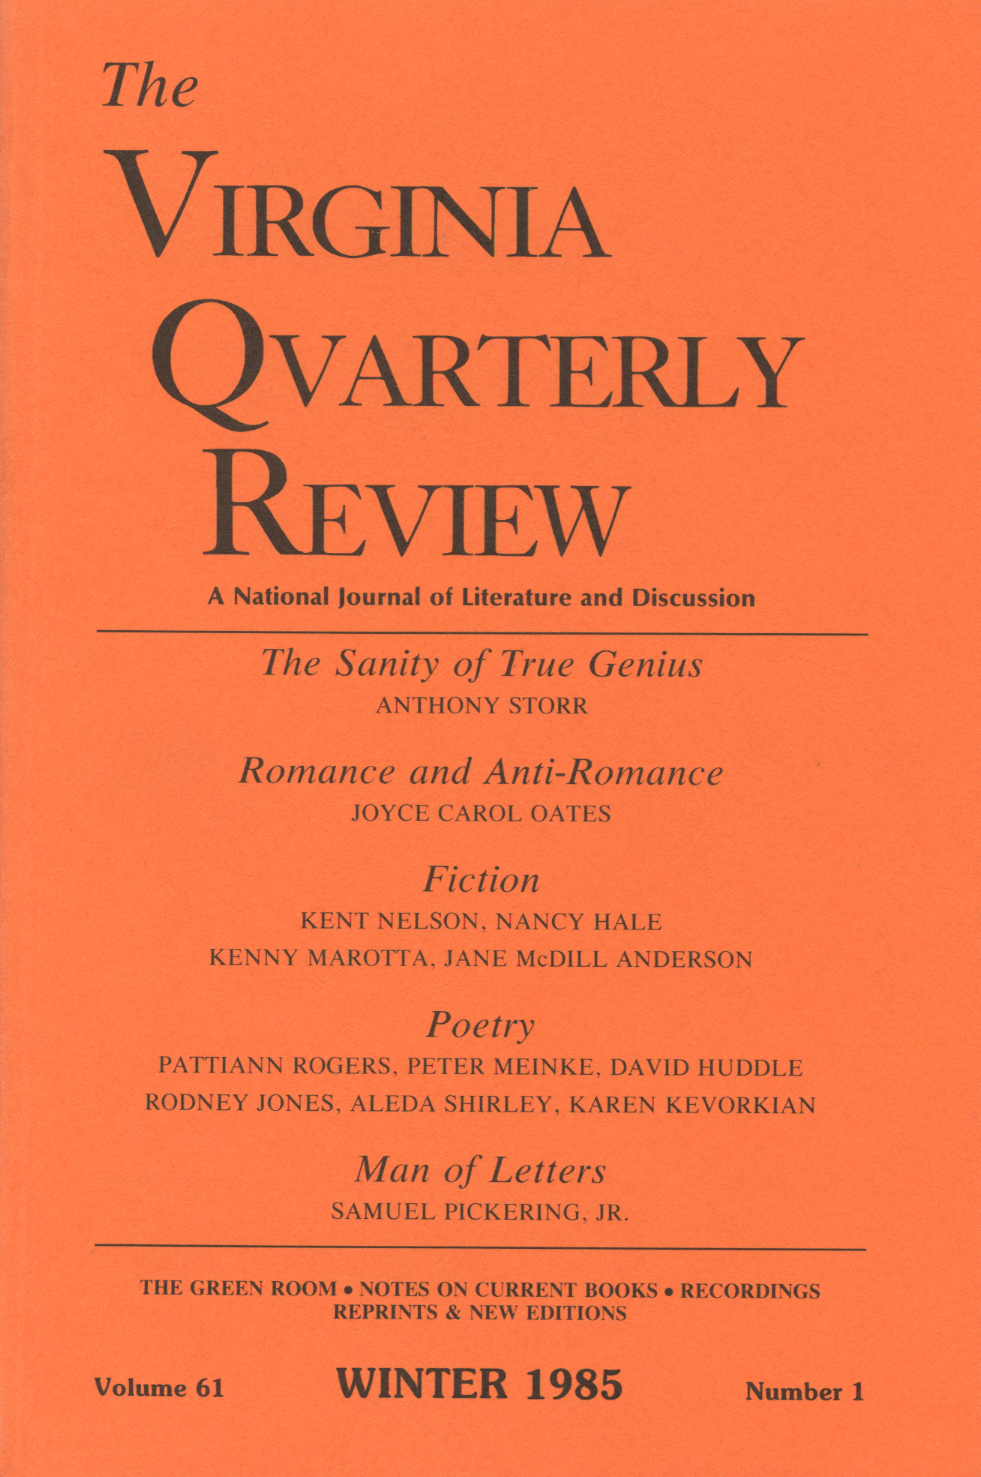 Virginia Quarterly Review, Winter 1985 cover